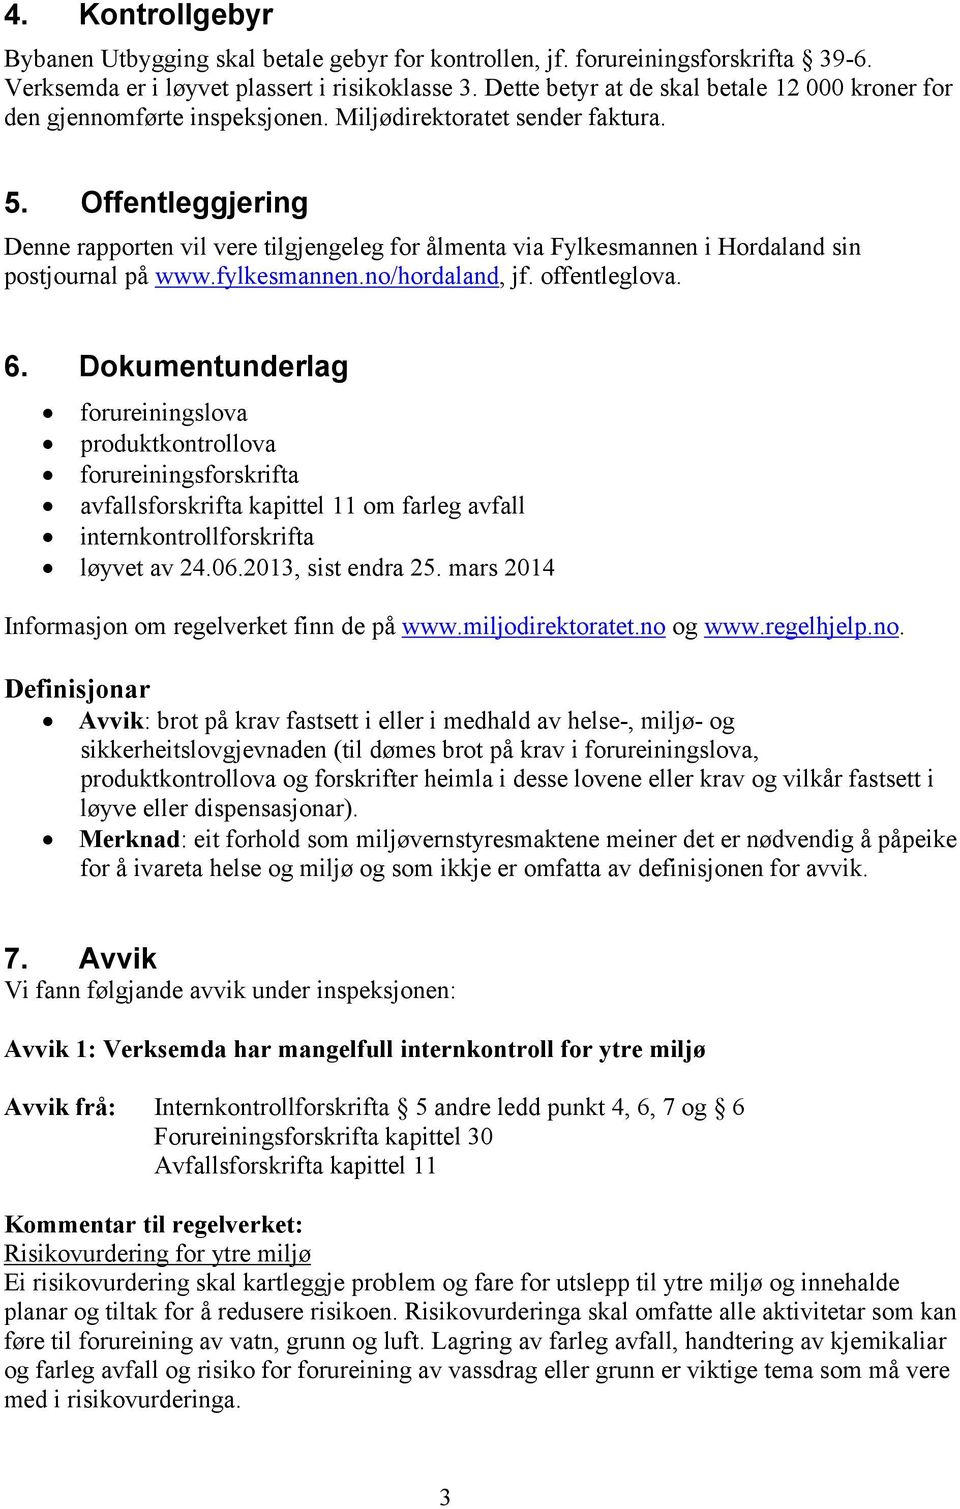 Offentleggjering Denne rapporten vil vere tilgjengeleg for ålmenta via Fylkesmannen i Hordaland sin postjournal på www.fylkesmannen.no/hordaland, jf. offentleglova. 6.